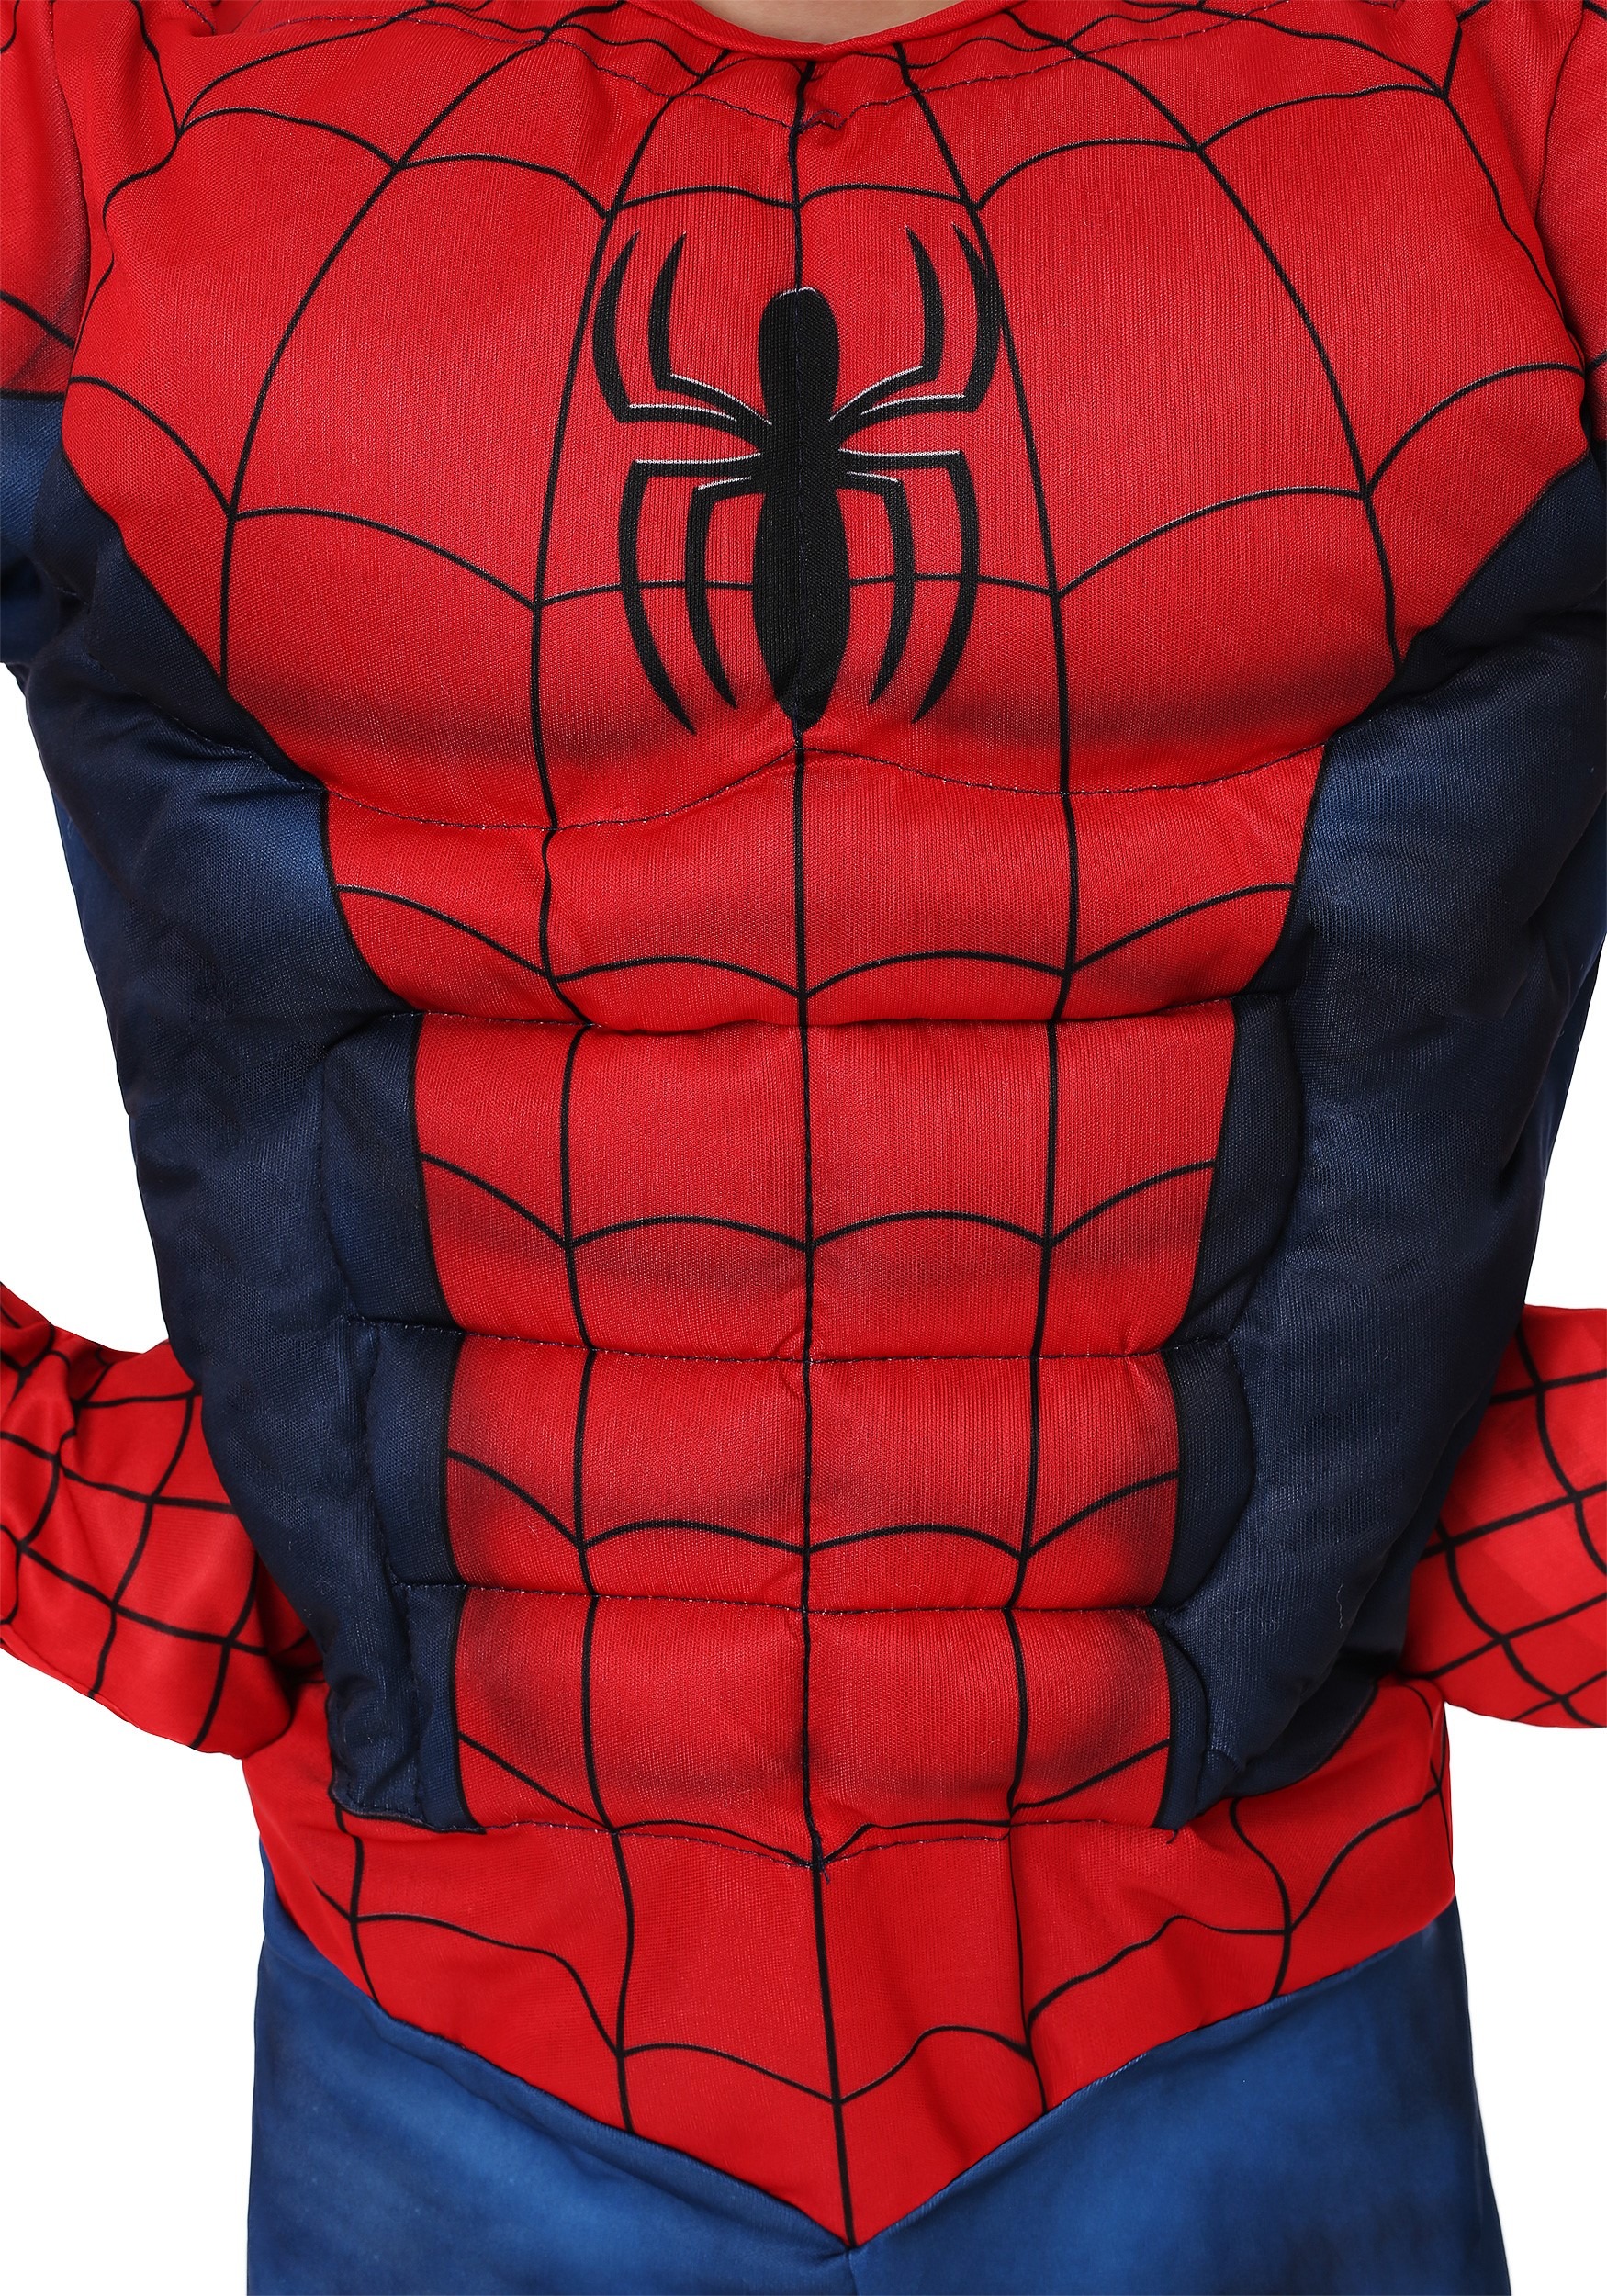 Marvel Spider-Man Toddler Costume For Boys